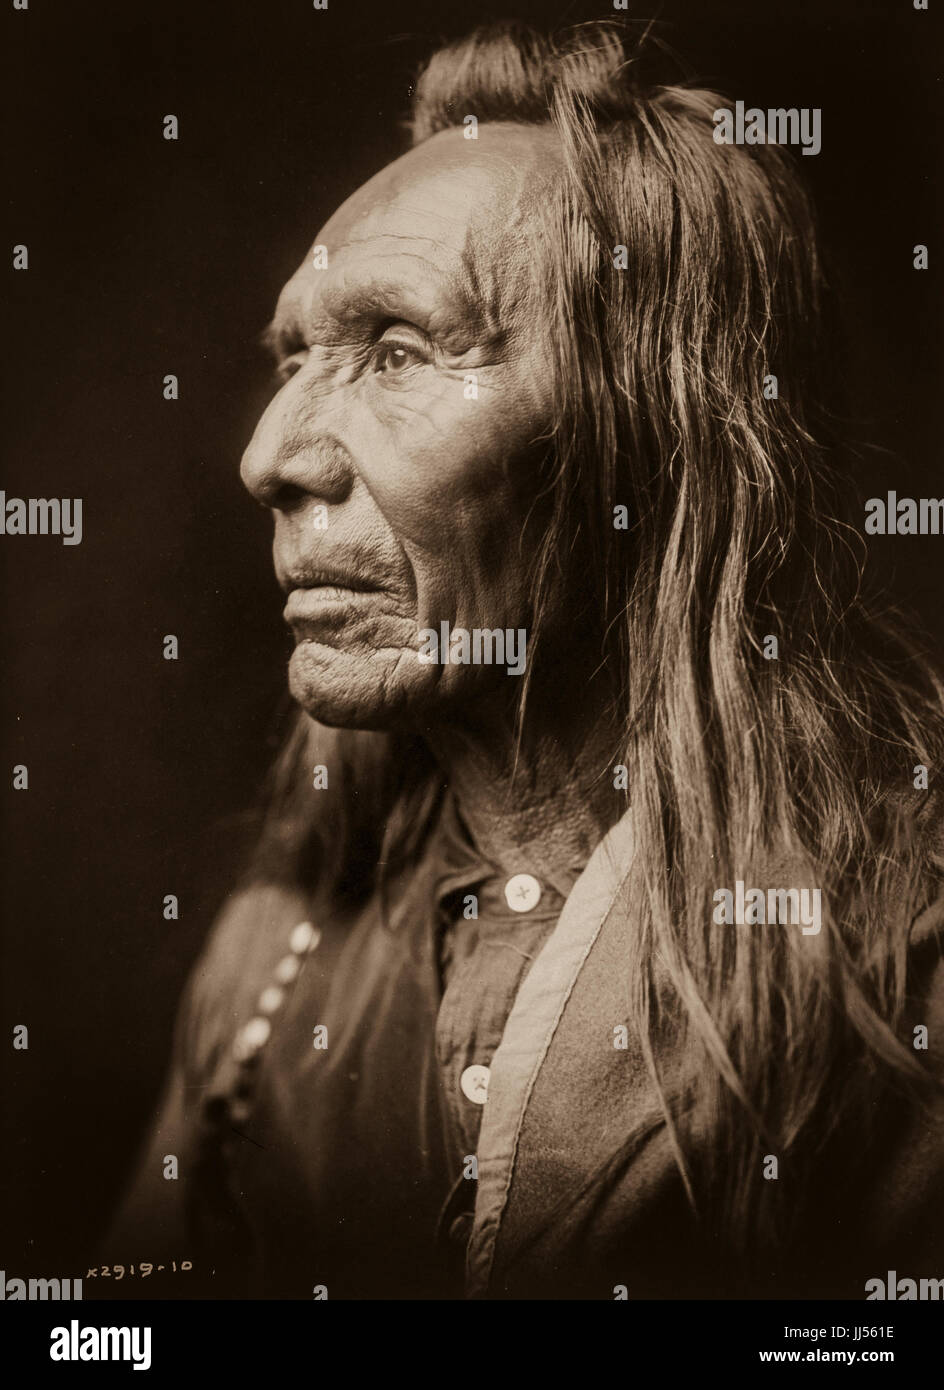 Die Porträts und Landschaften von Edward S. Curtis 1868 - 1952-Fokus auf den indianischen Stämmen des Pazifischen Nordwestens. Fotografien von Edward Sheriff Curtis. Stockfoto